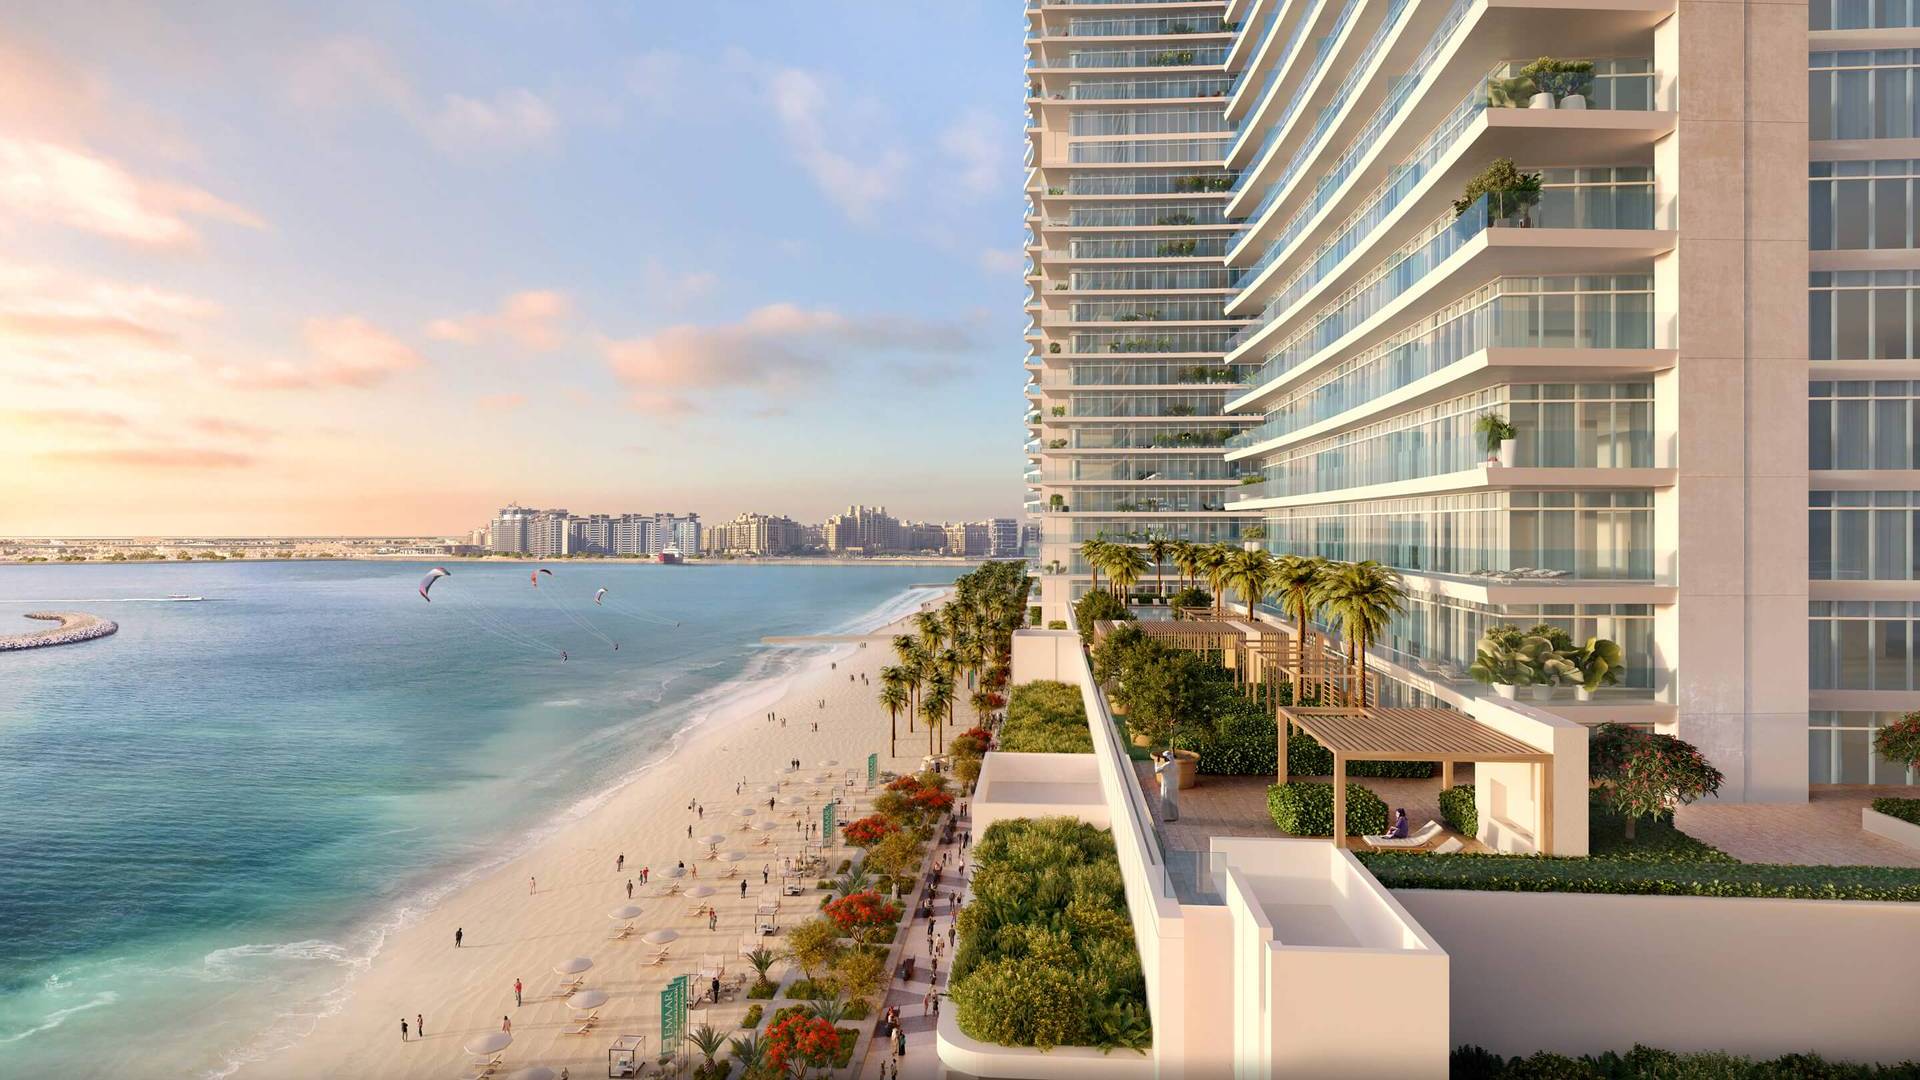 BEACH VISTA by Emaar Properties in Emaar beachfront, Dubai, UAE